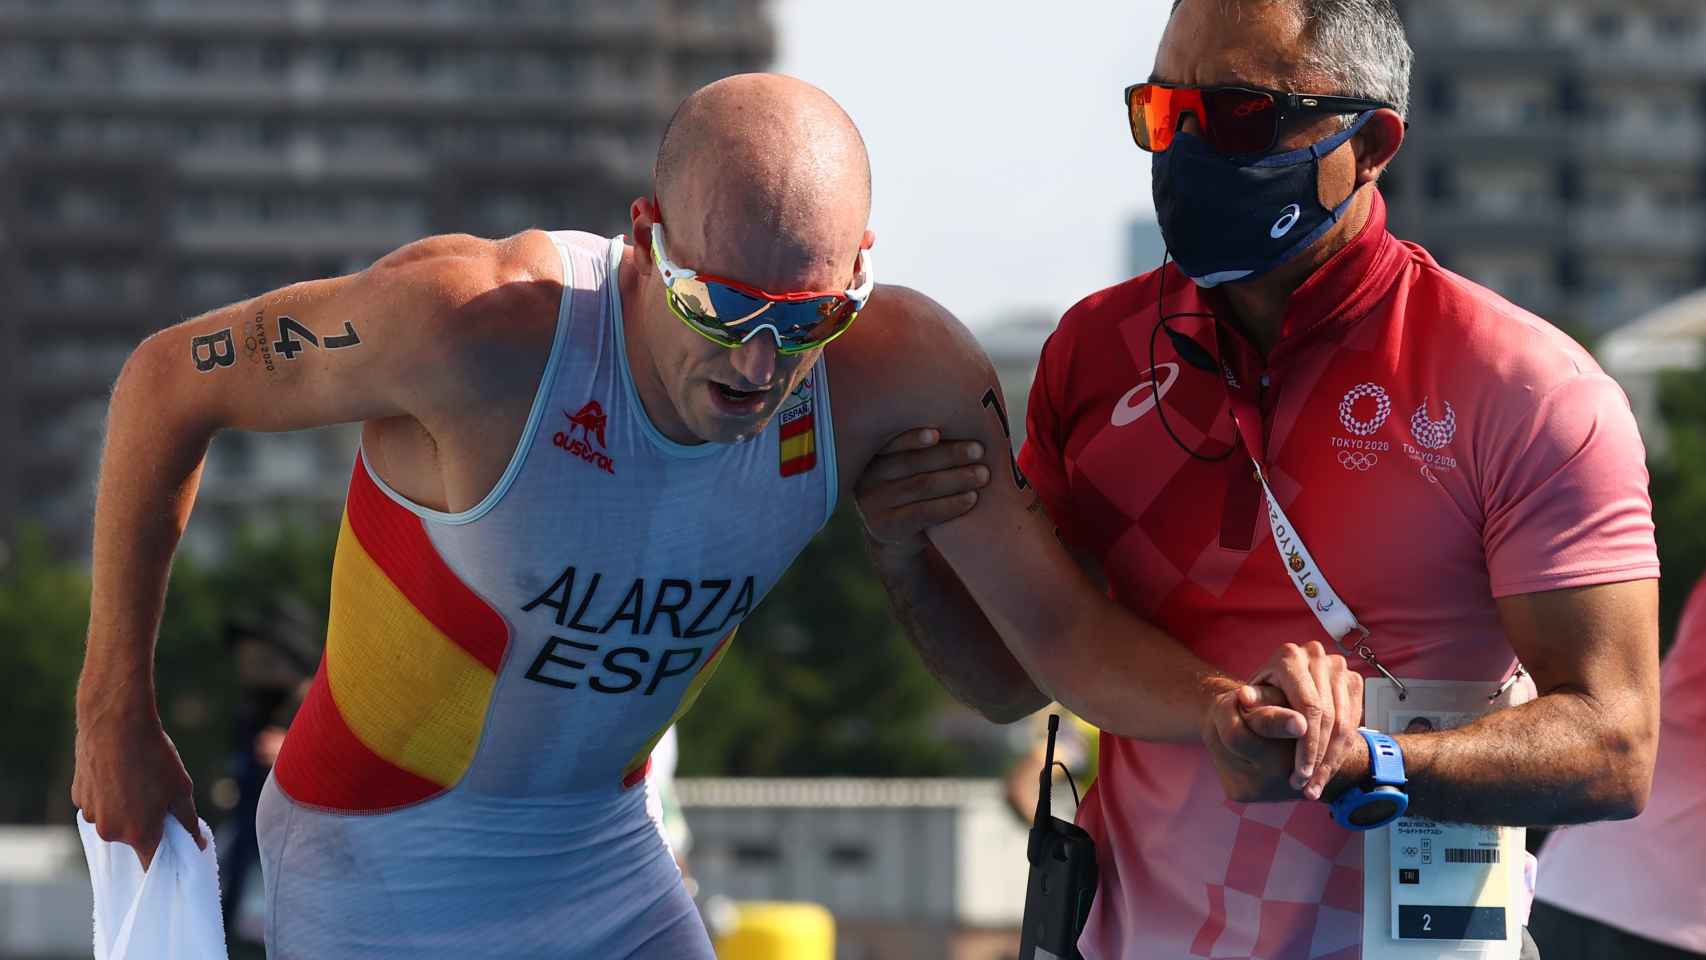 Fernando Alarza tras la prueba de relevo mixto de triatlón en los JJOO de Tokio 2020